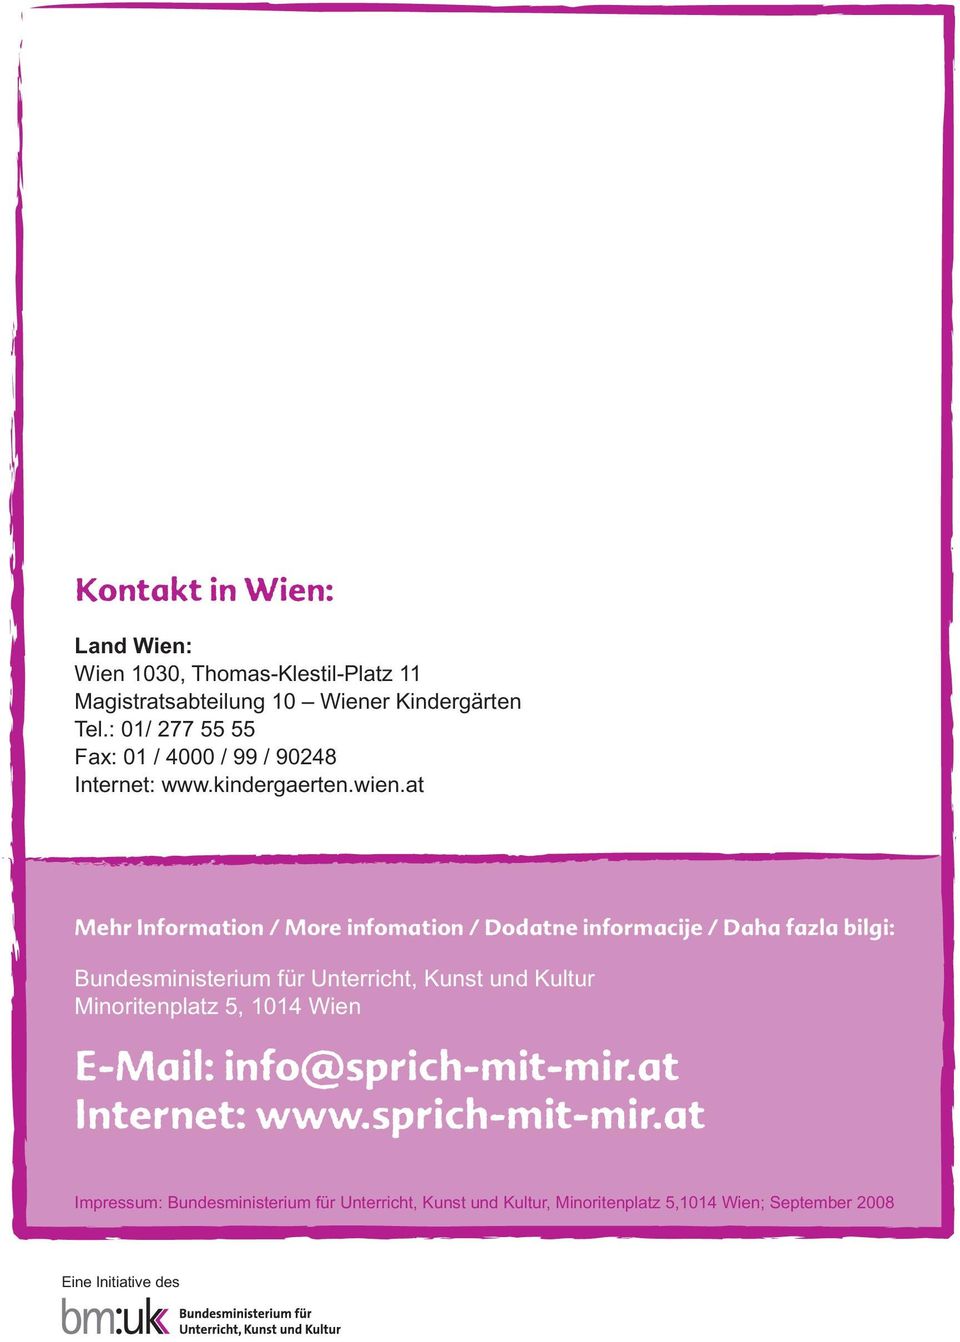 at Mehr Information / More infomation / Dodatne informacije / Daha fazla bilgi: Bundesministerium für Unterricht, Kunst und Kultur